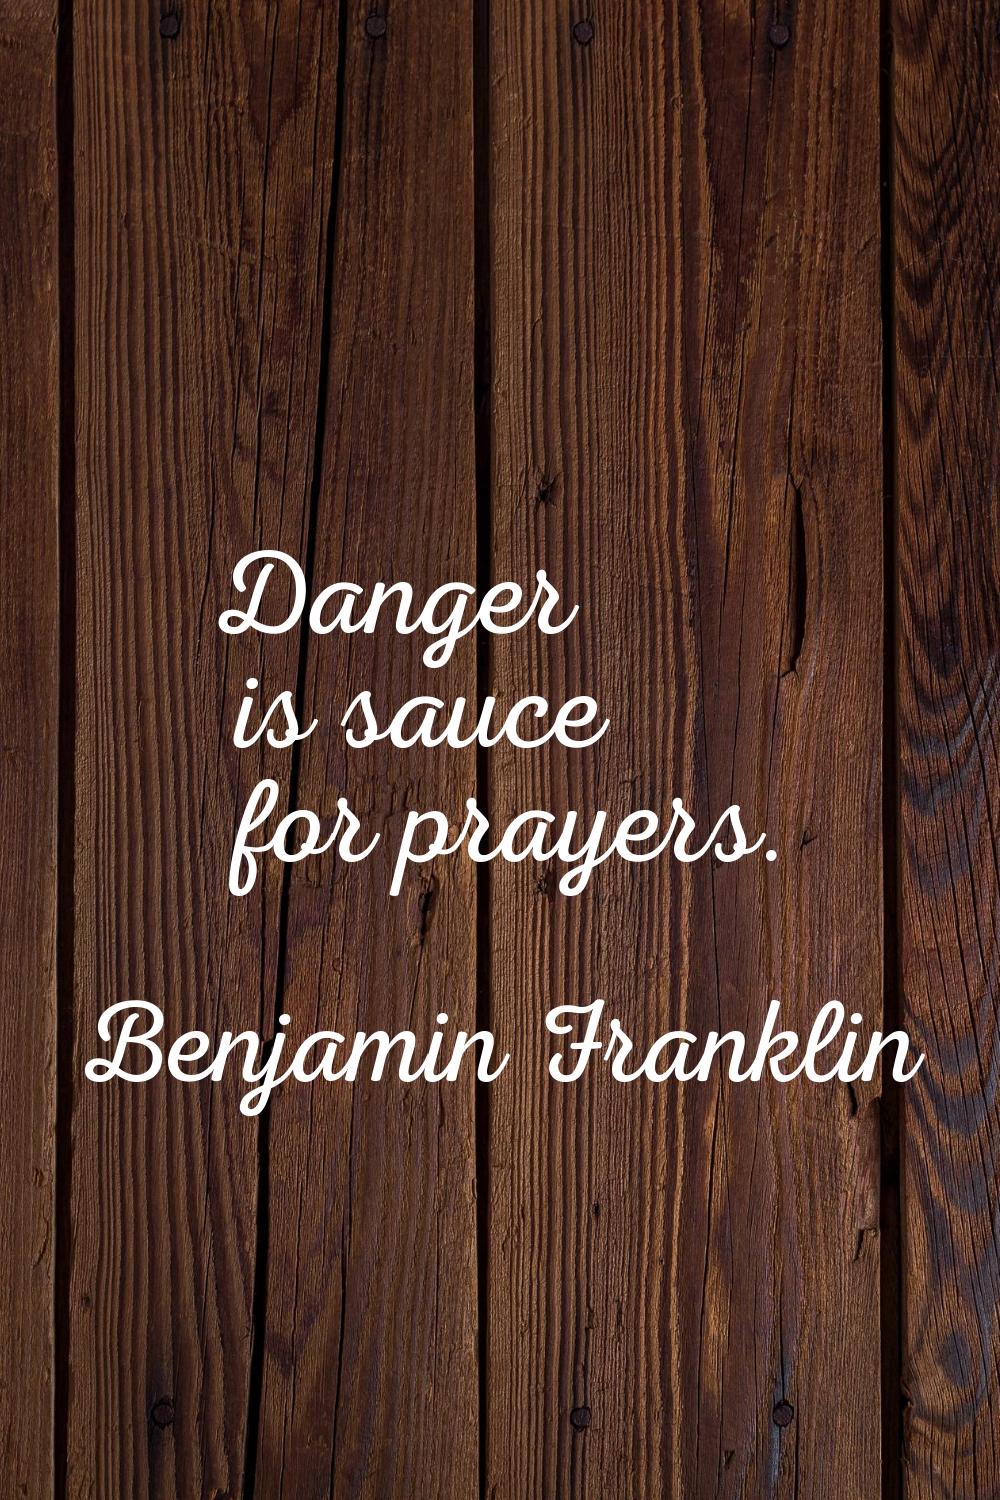 Danger is sauce for prayers.